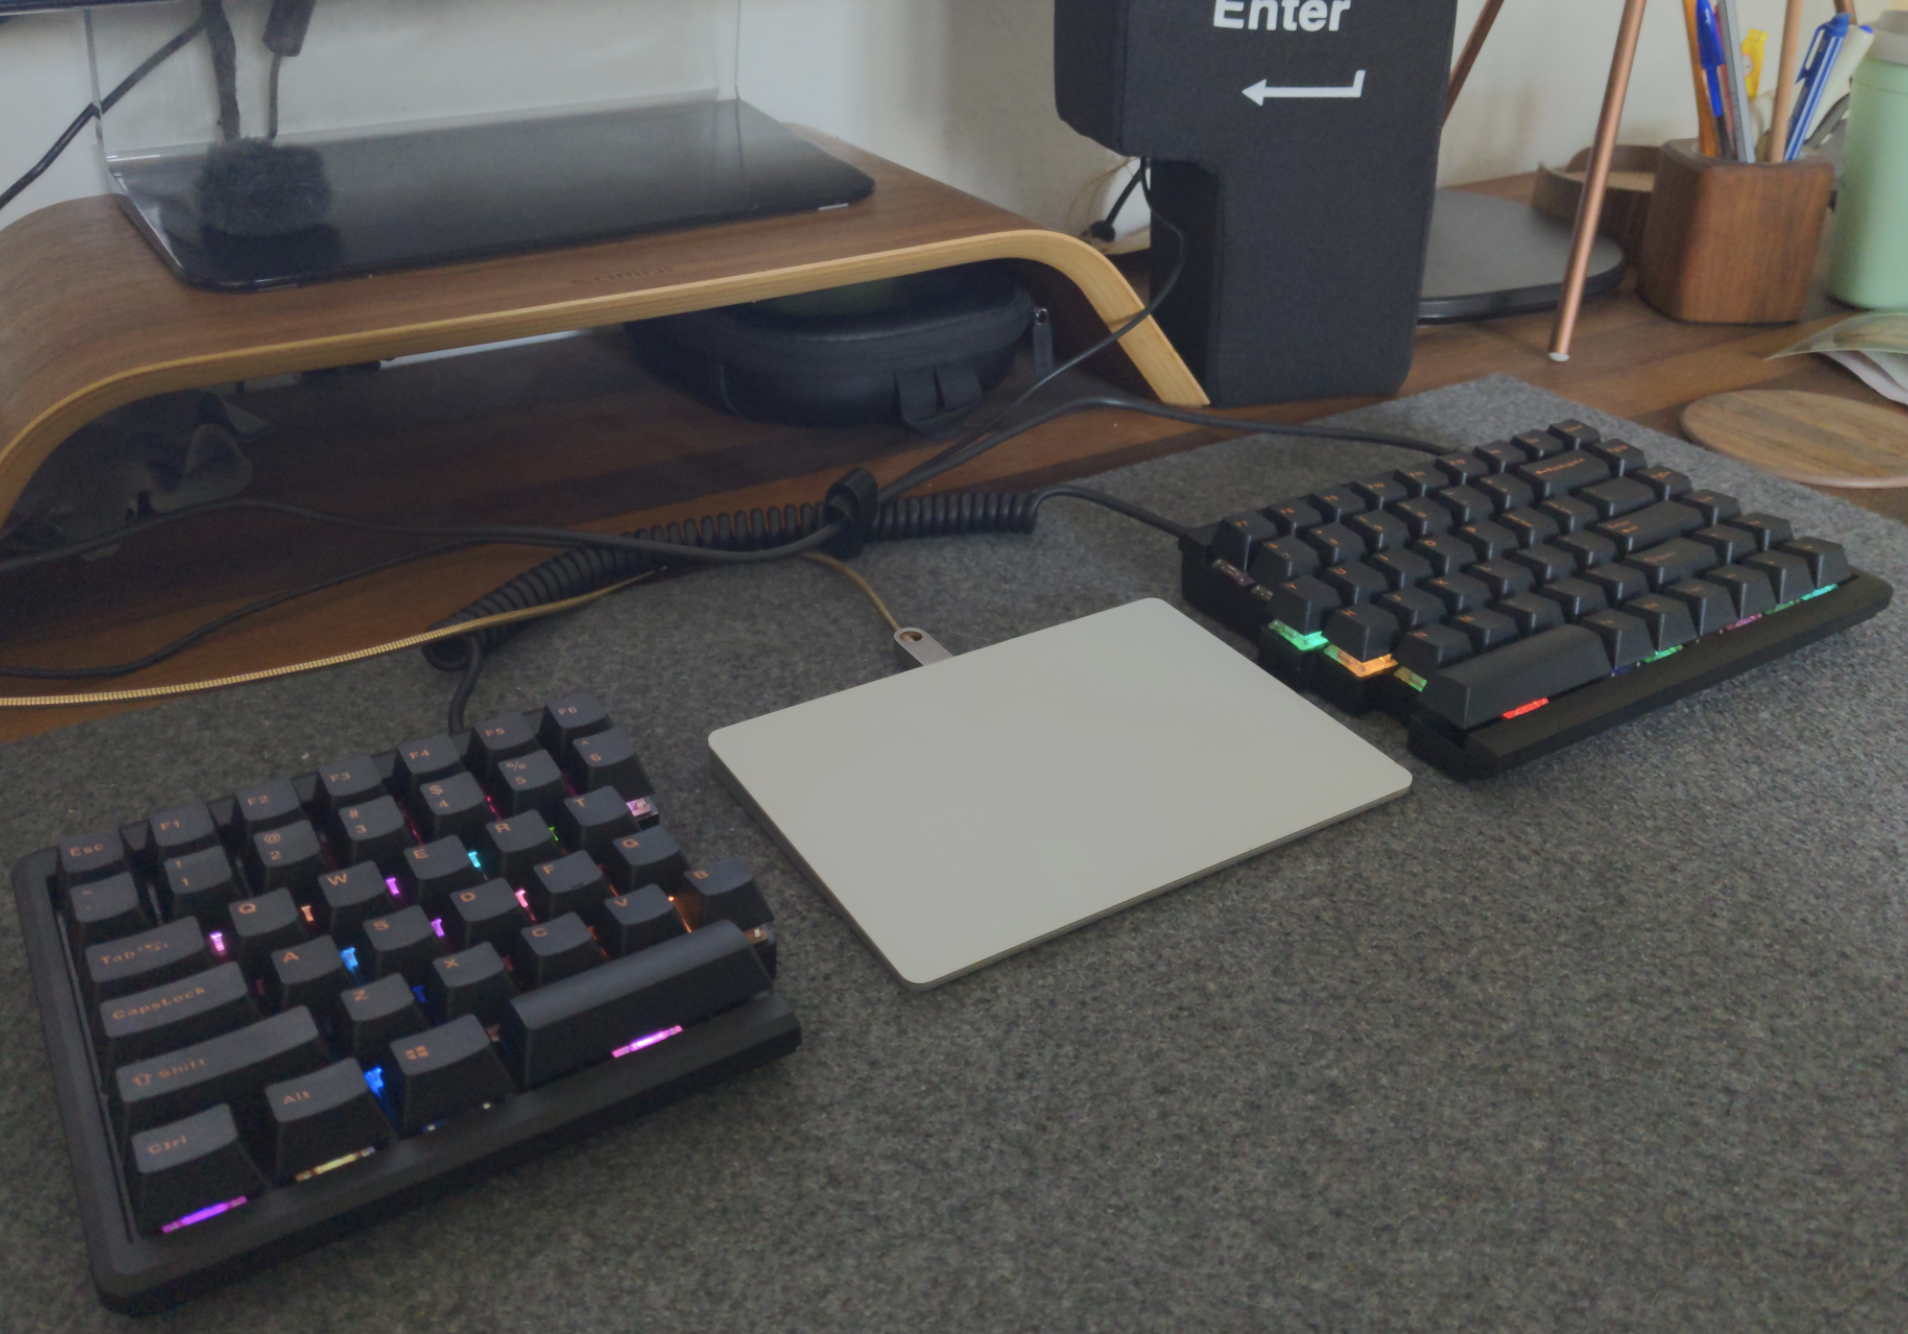 Split keyboard on my desk